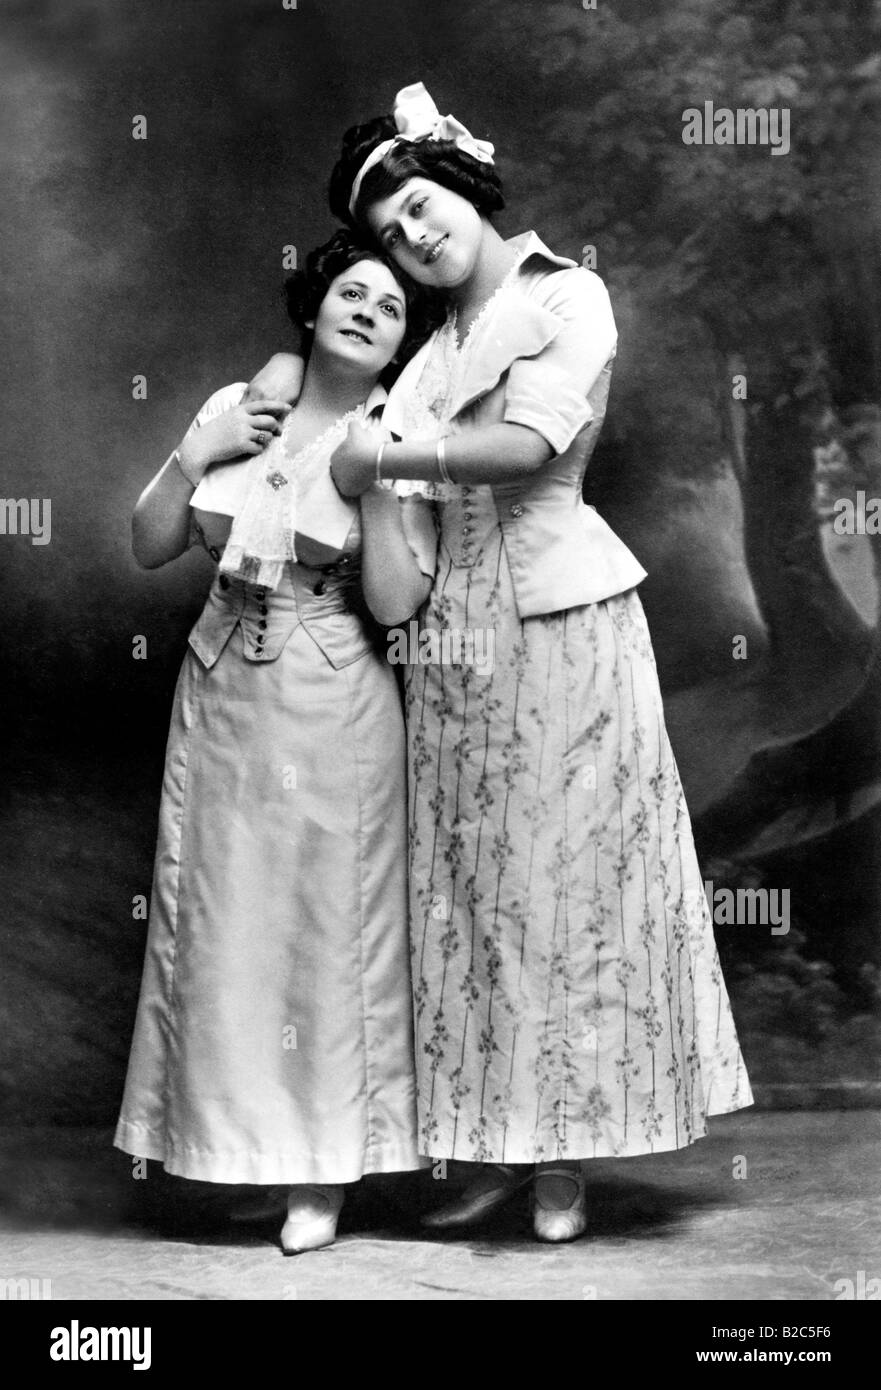 Sterben Sie, Keusche Barbara, zwei Frauen umarmen, historische Bild von ca. 1910 Stockfoto